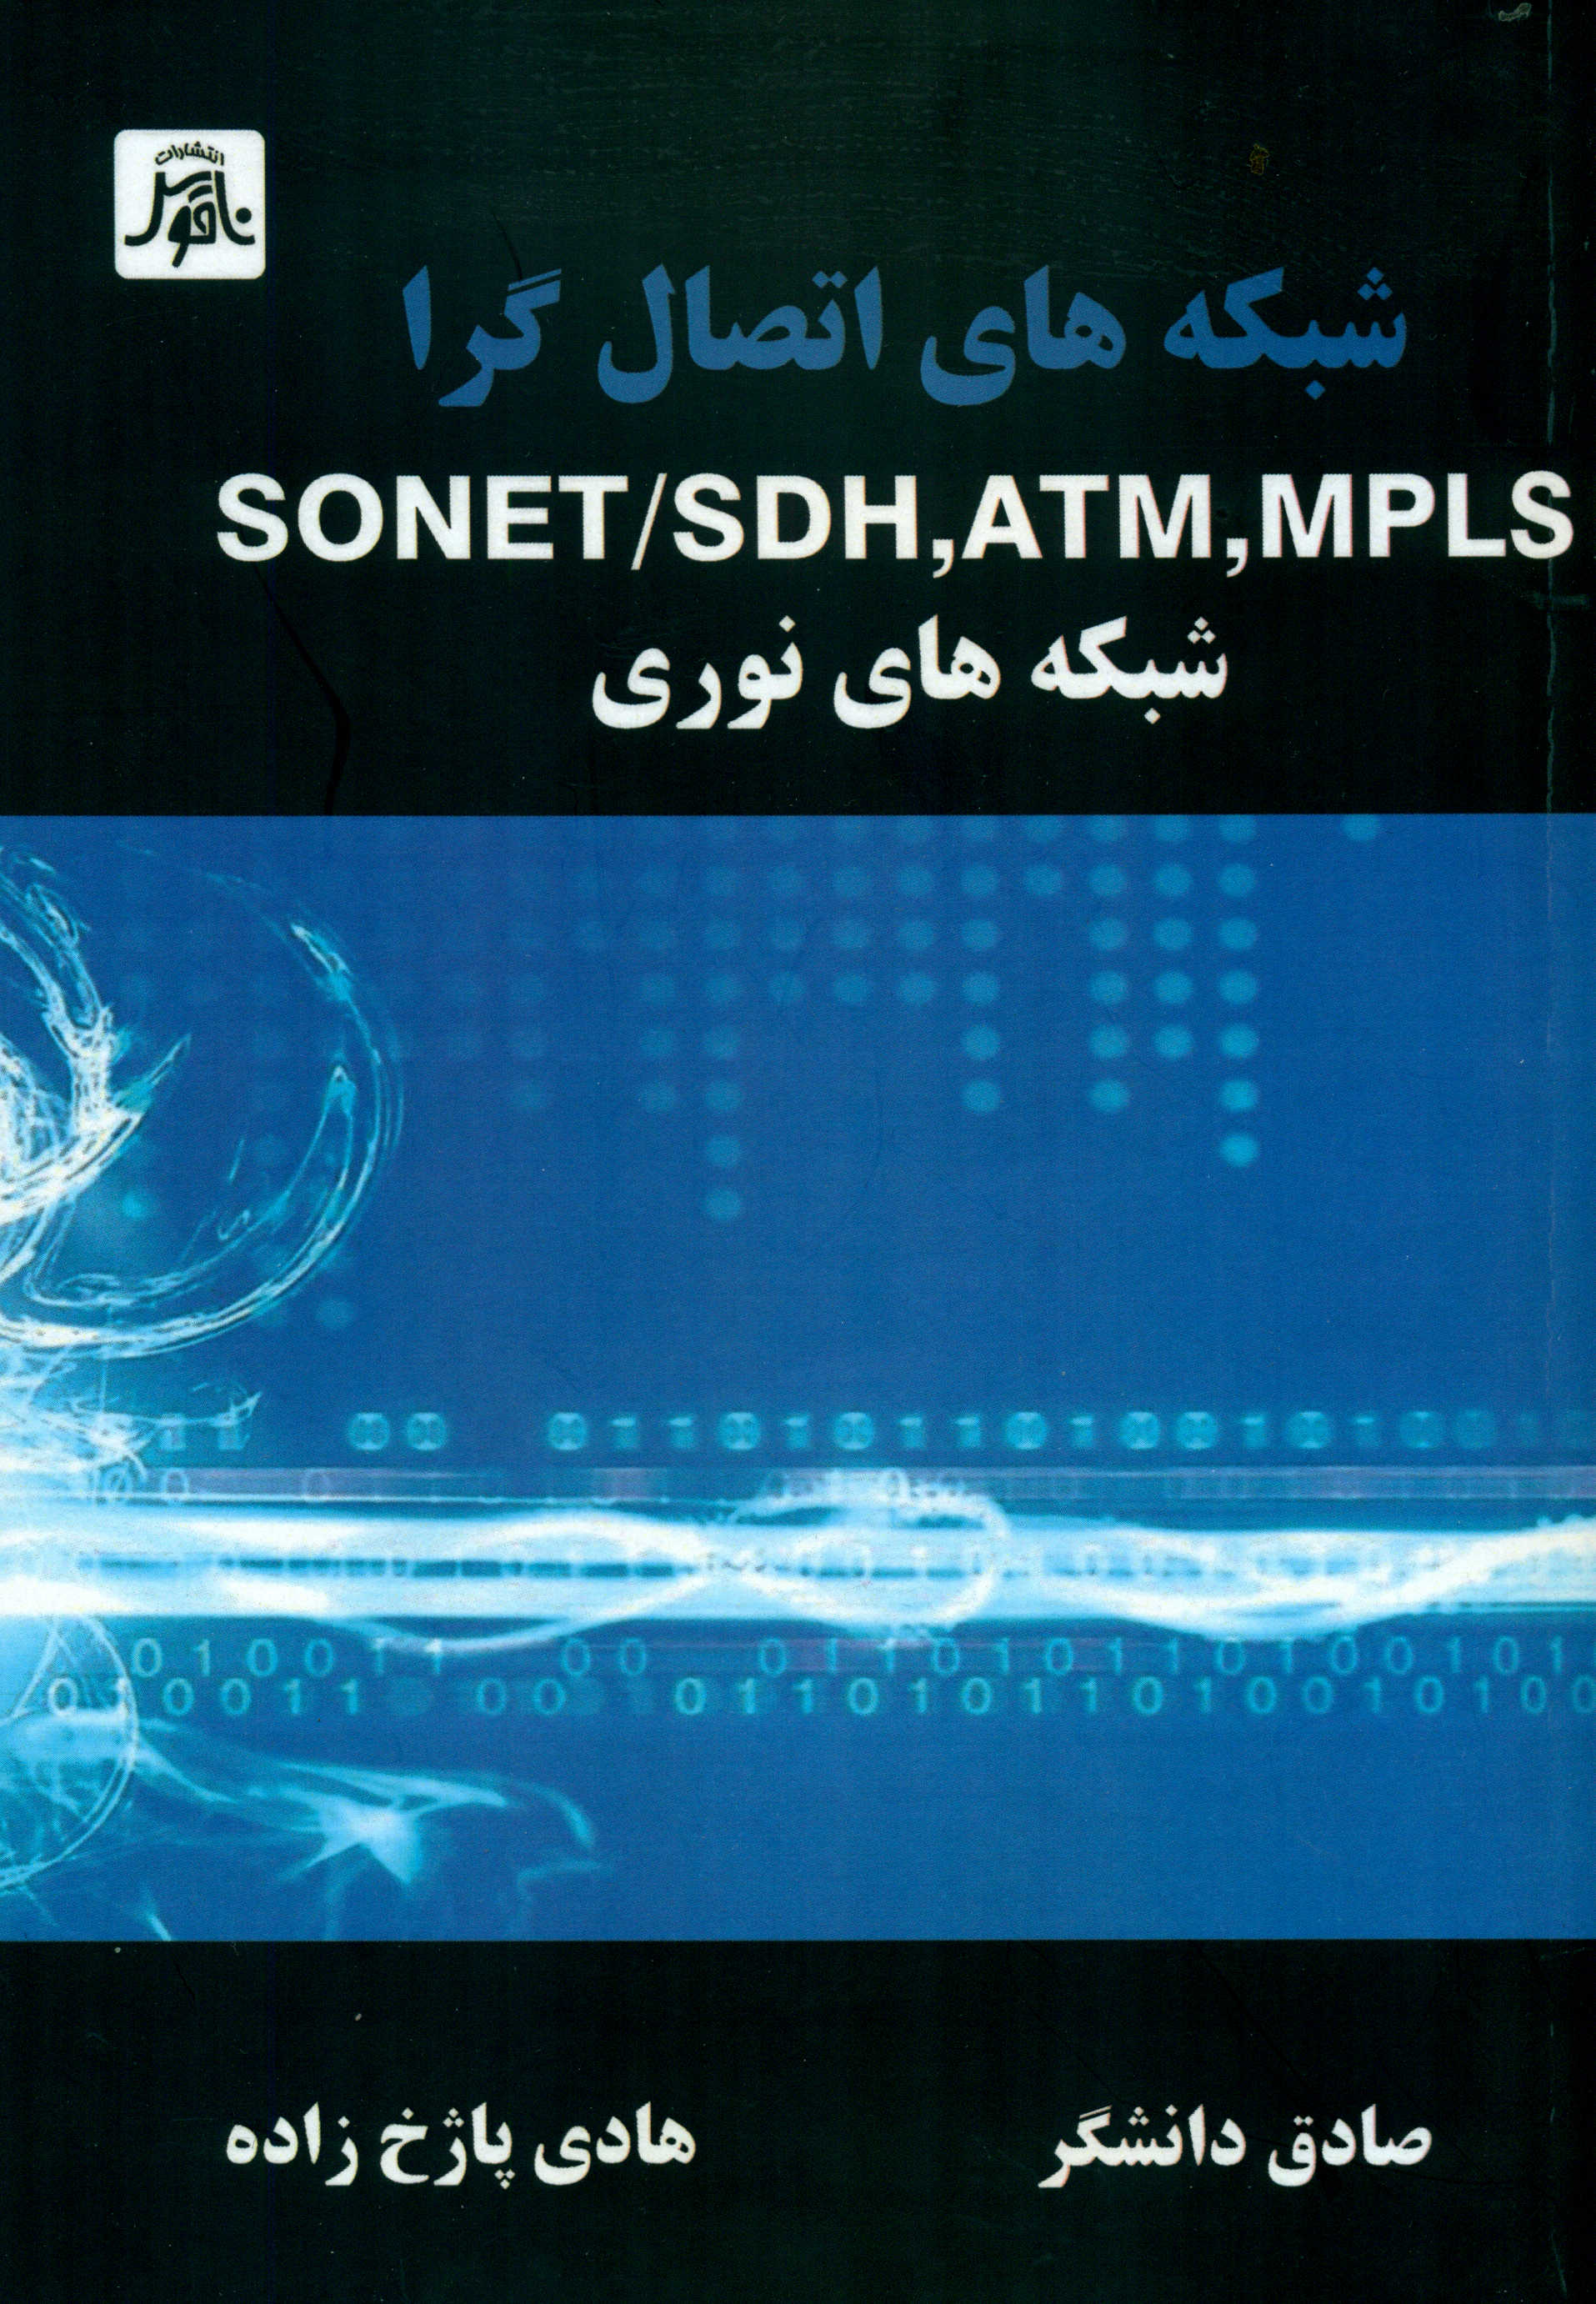 شبكه هاي اتصال گراSONET/SDH،ATM،MPLSشبكه هاي نوري